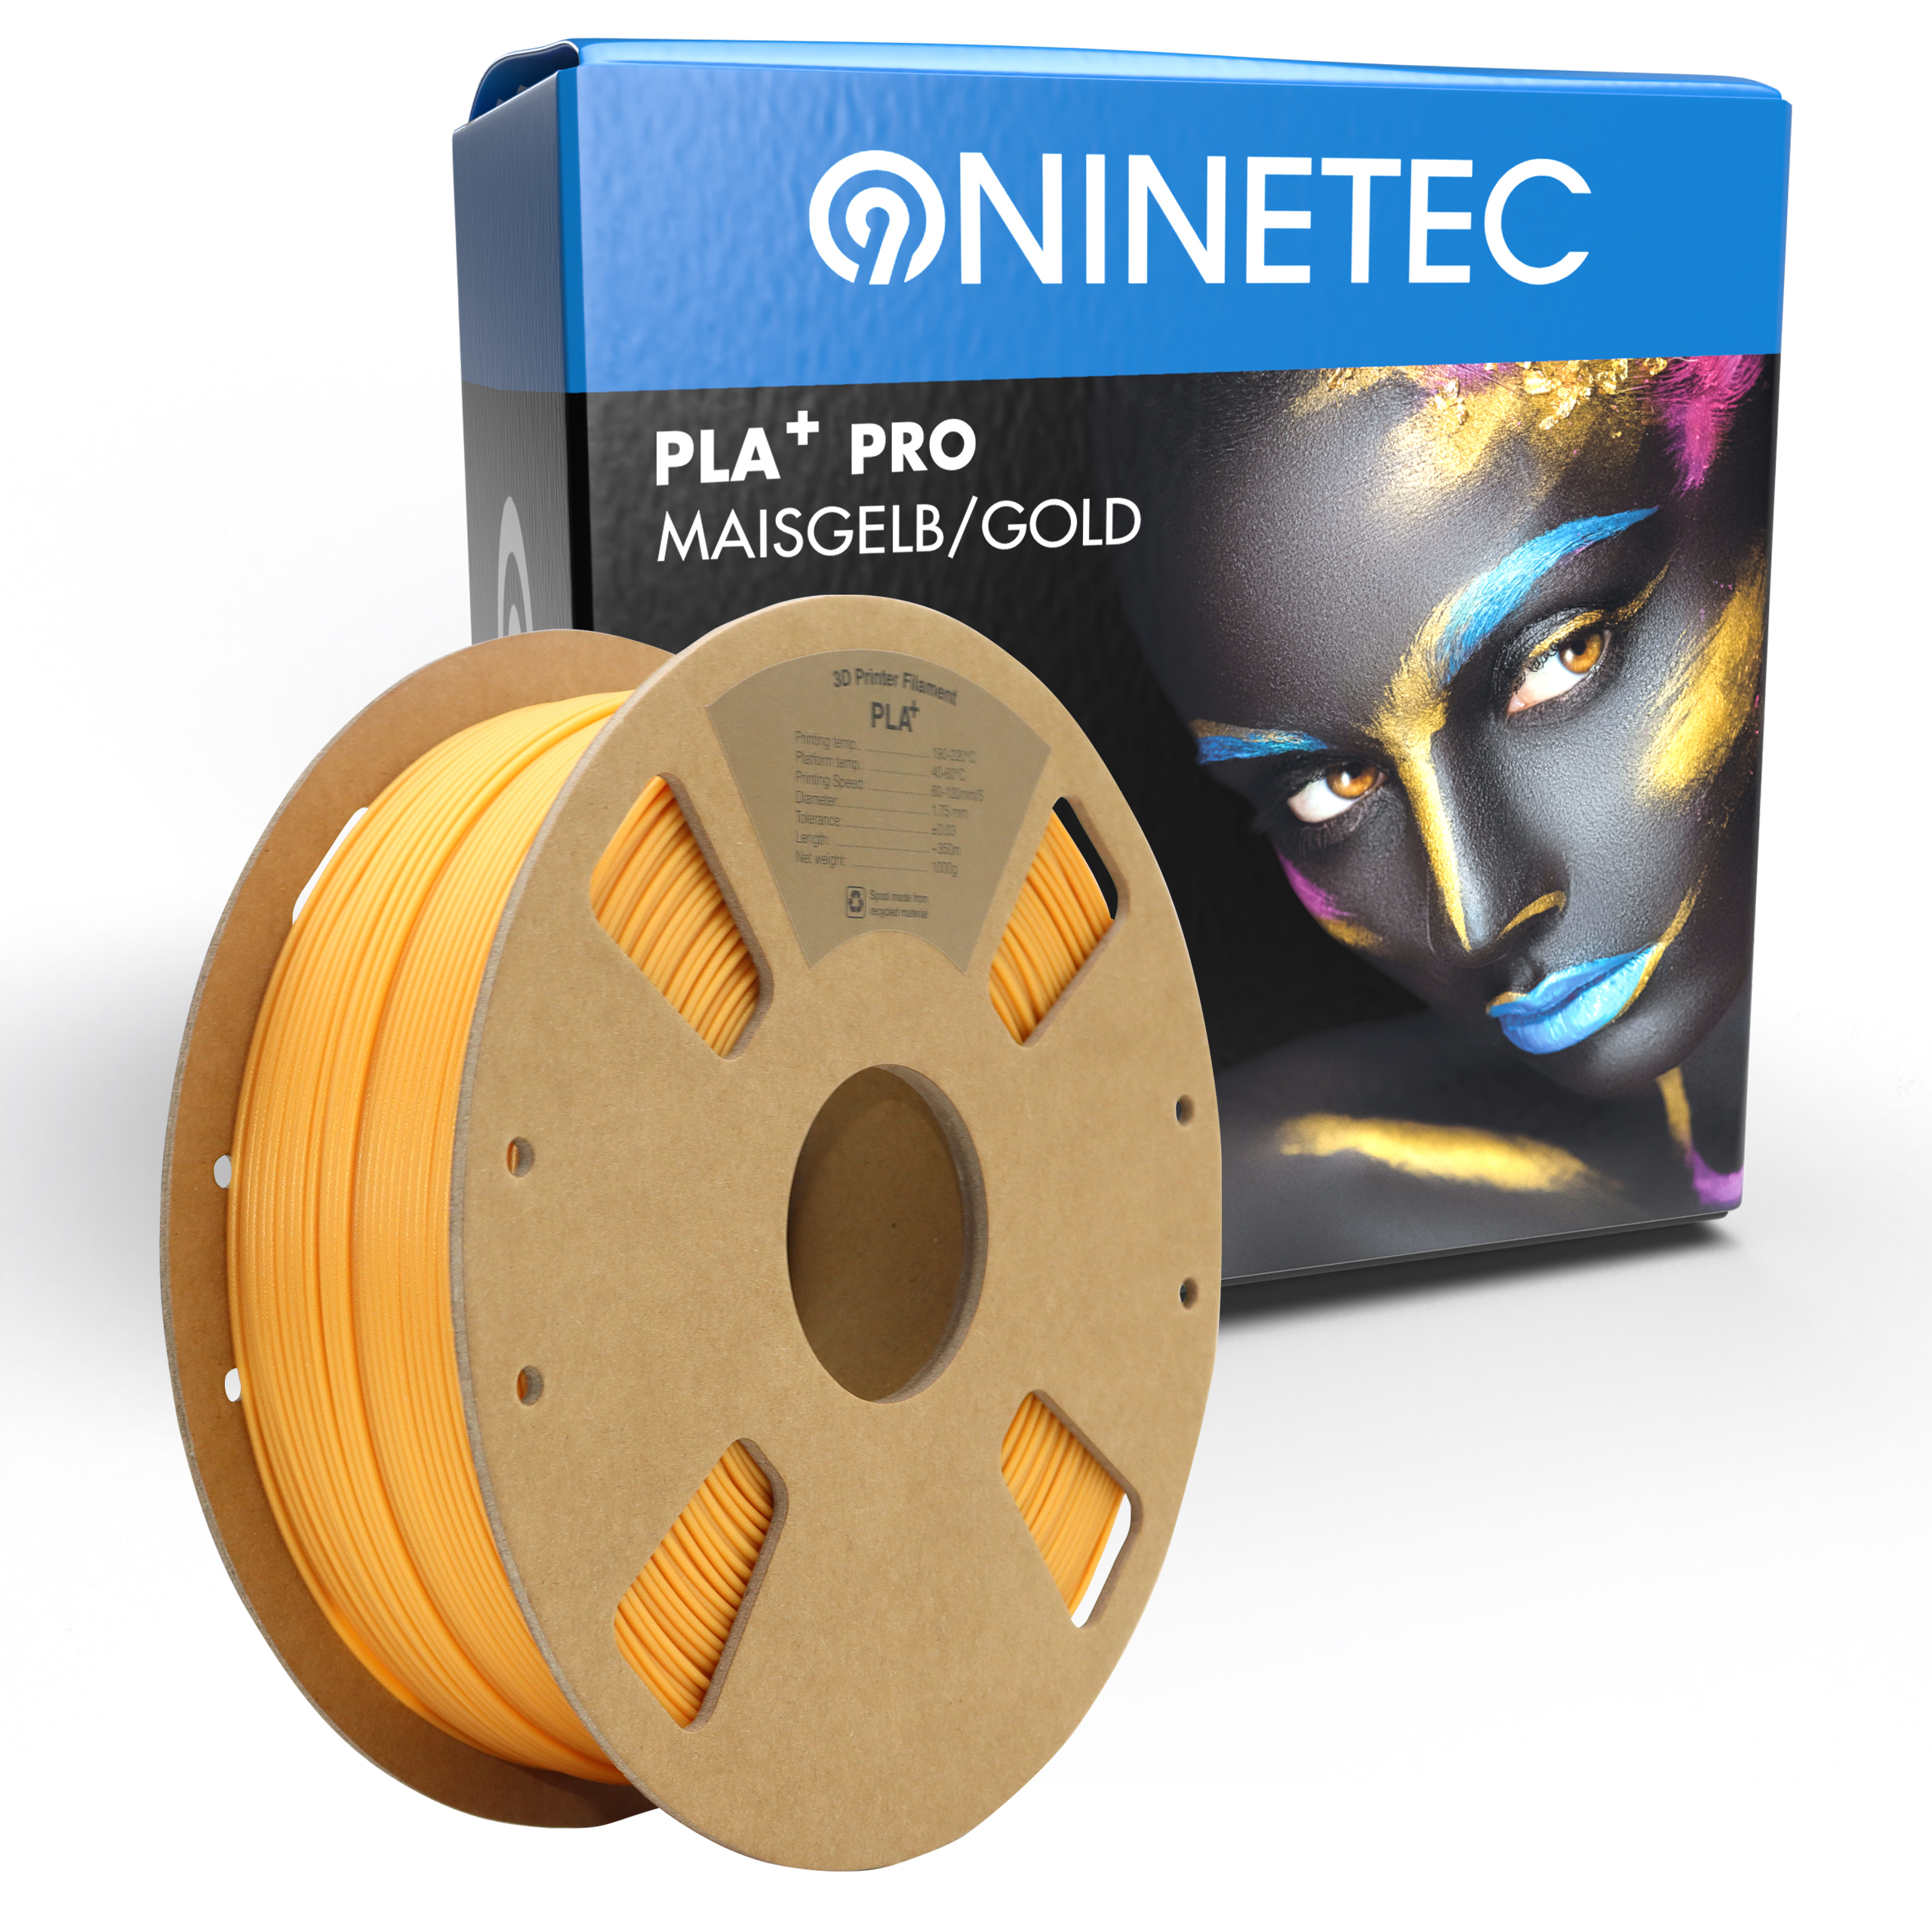 NINETEC PLA+ PRO Gold Filament